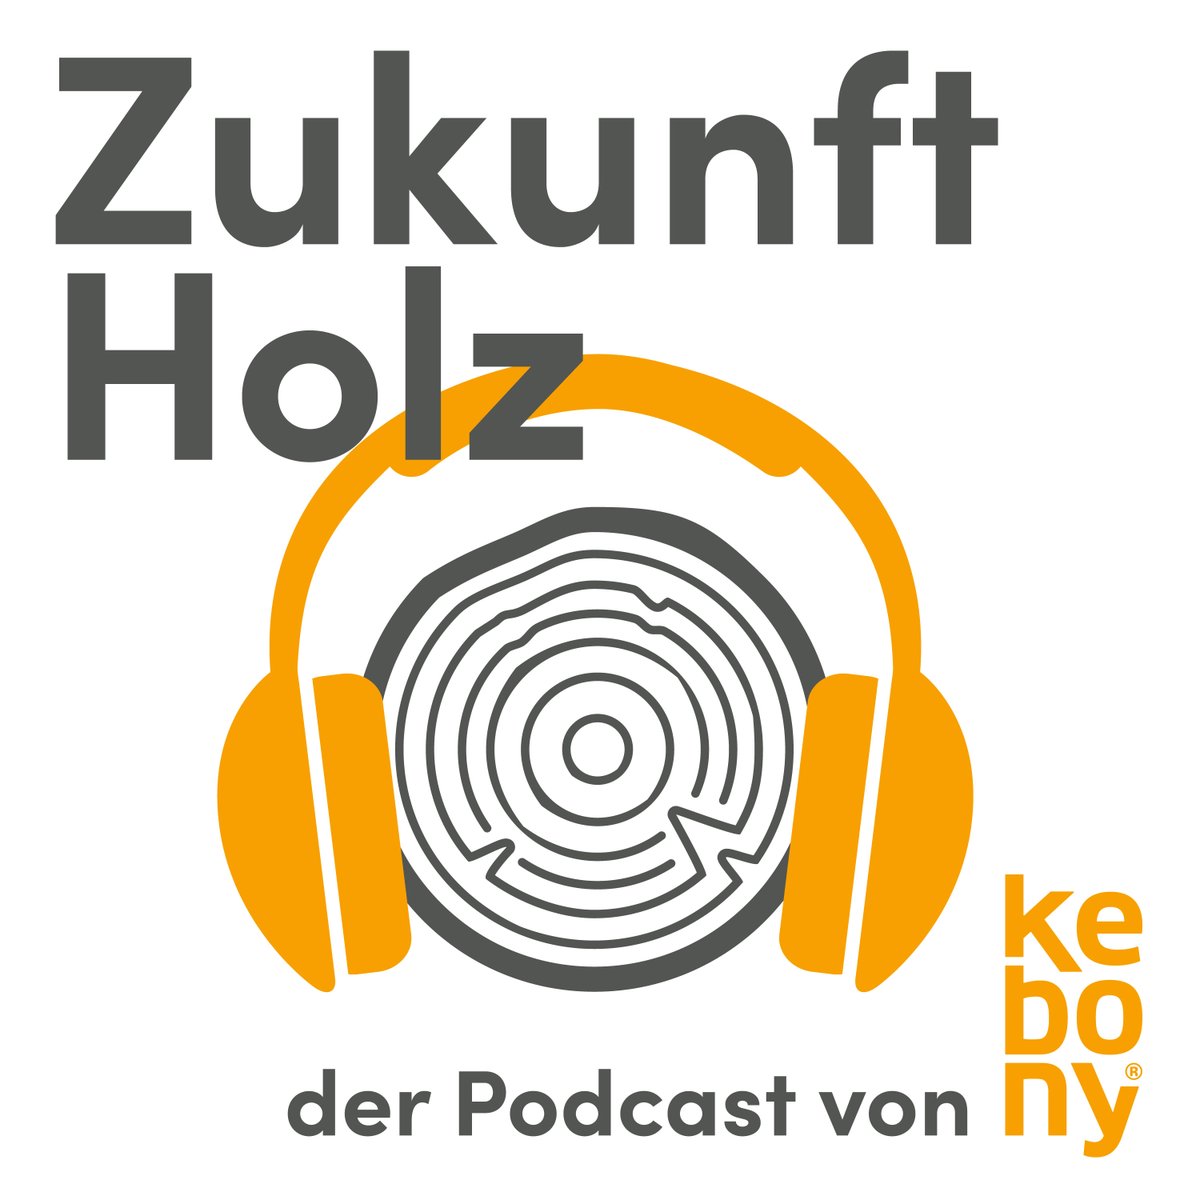 Social Media fürs Handwerk - wie läuft das? 
ZUKUNFT HOLZ - der #Podcast von #Kebony. Mit Jan Hartkämper (https://t.co/kzr3Pjp1tz) und Thomas Narzynski (https://t.co/GP9xBbtNoD). Jetzt reinhören!https://t.co/imrRo9SWzD    #socialmedia #handwerk #holz #galabau #instagram https://t.co/n0MqmmFAw0